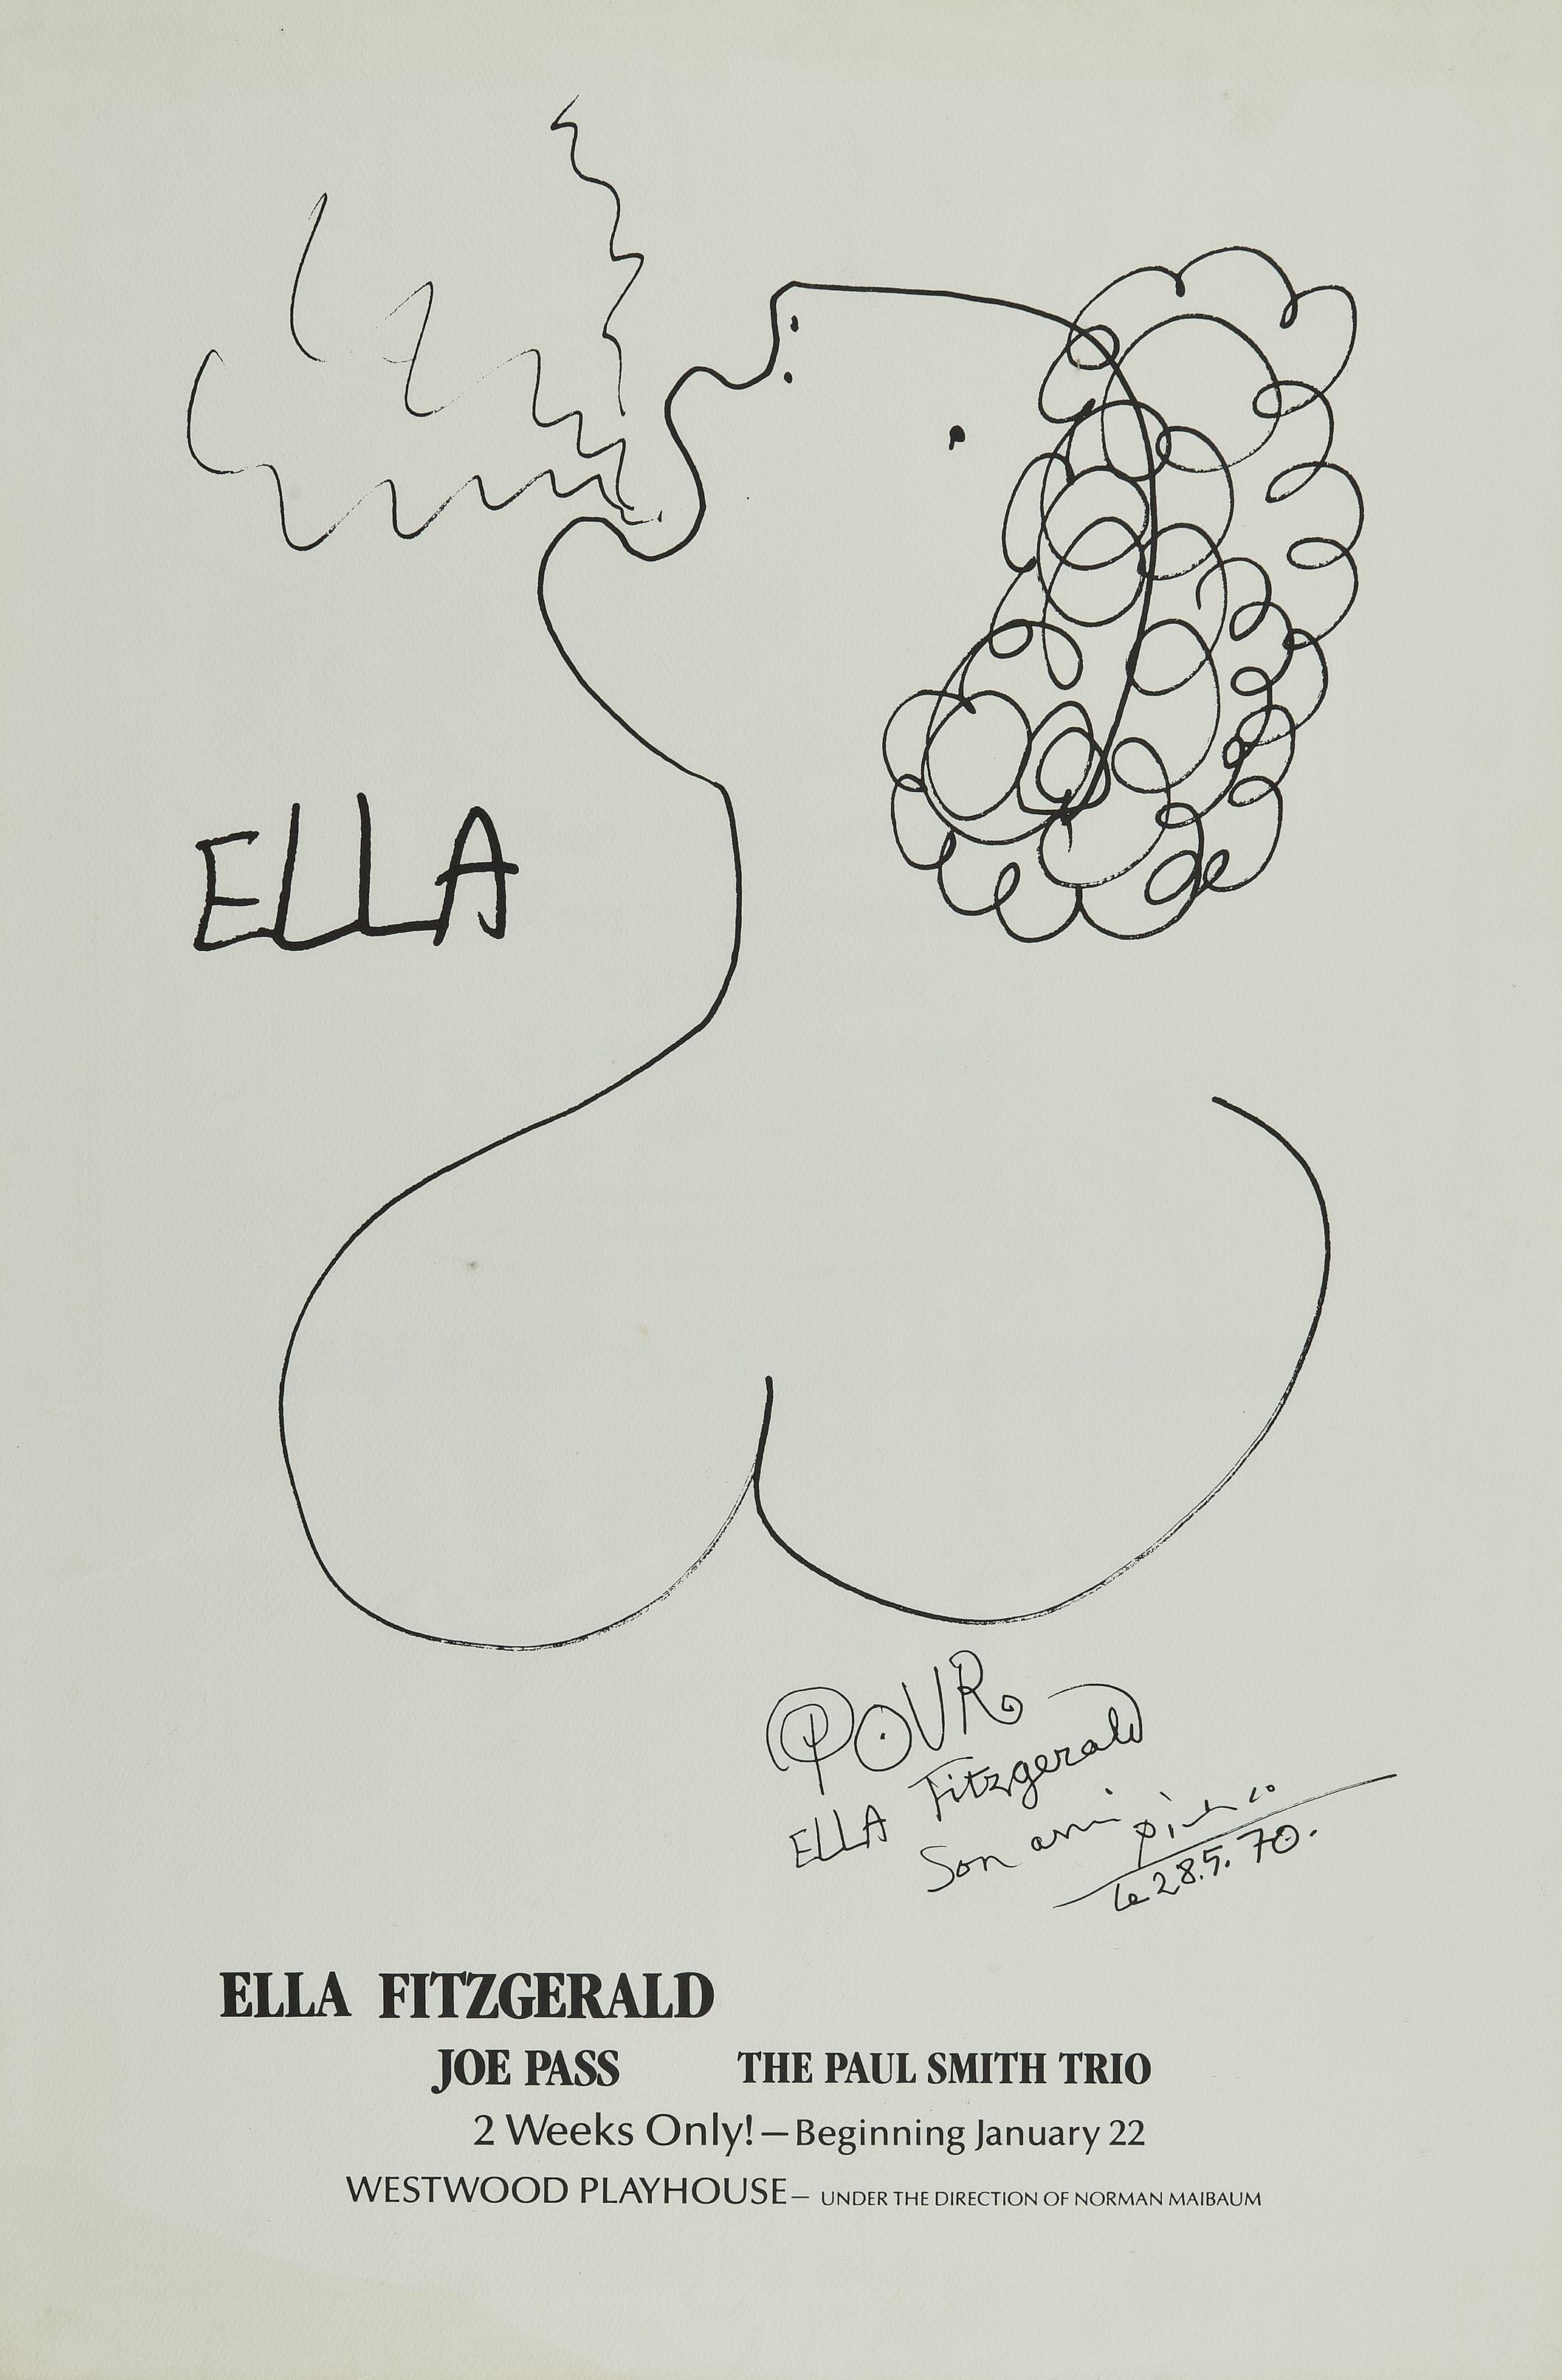 Affiche Ella Fitzgerald par Pablo Picasso